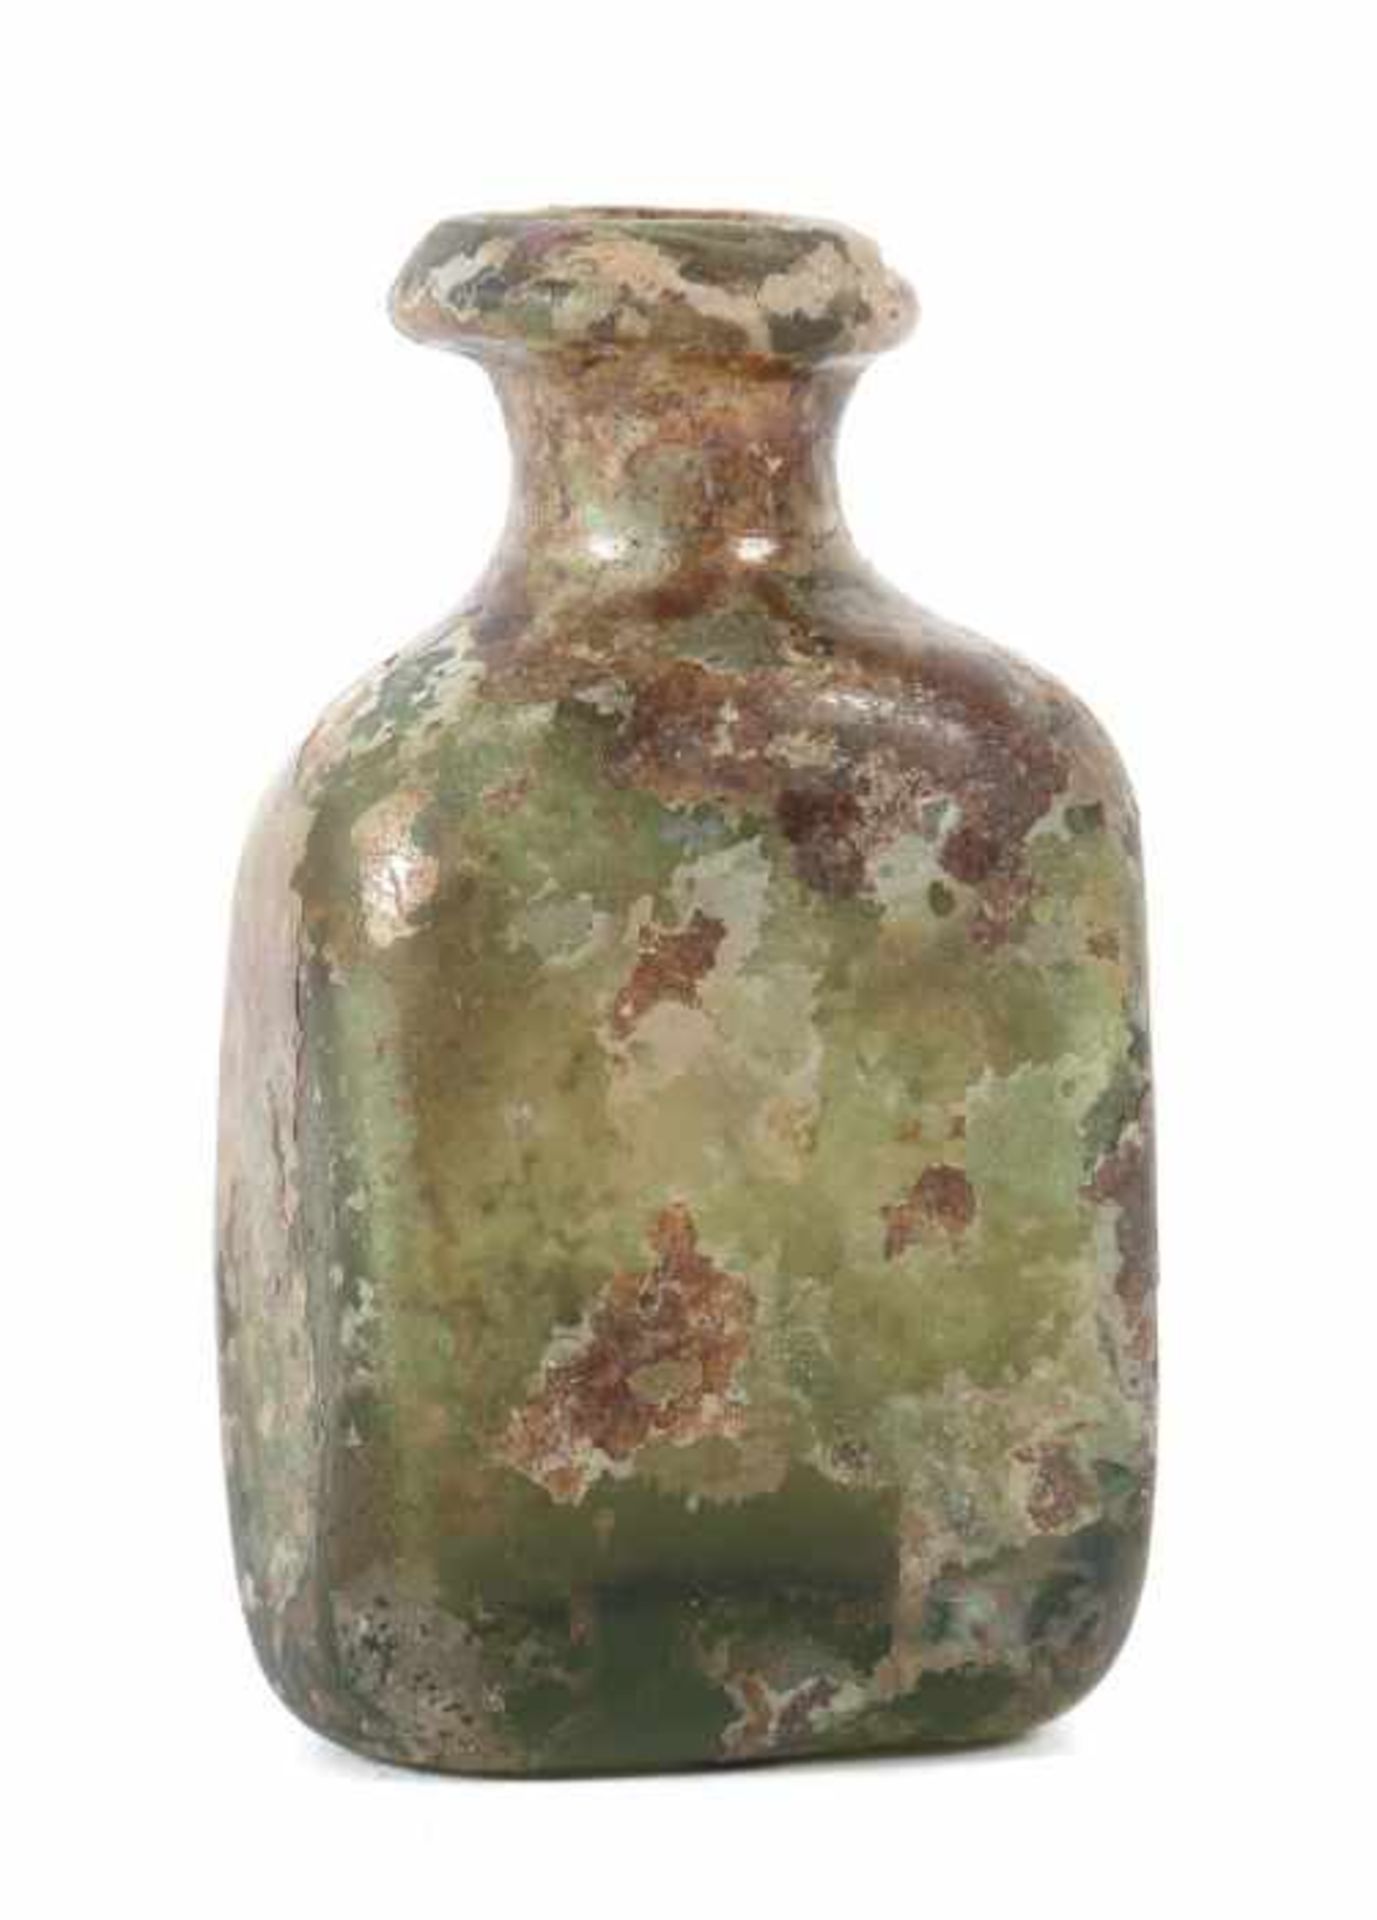 Flakon Wohl 1. Jh. n. Chr., römisch, leicht grünstichiges Glas mit Aufschmelzungen, irisierend, in